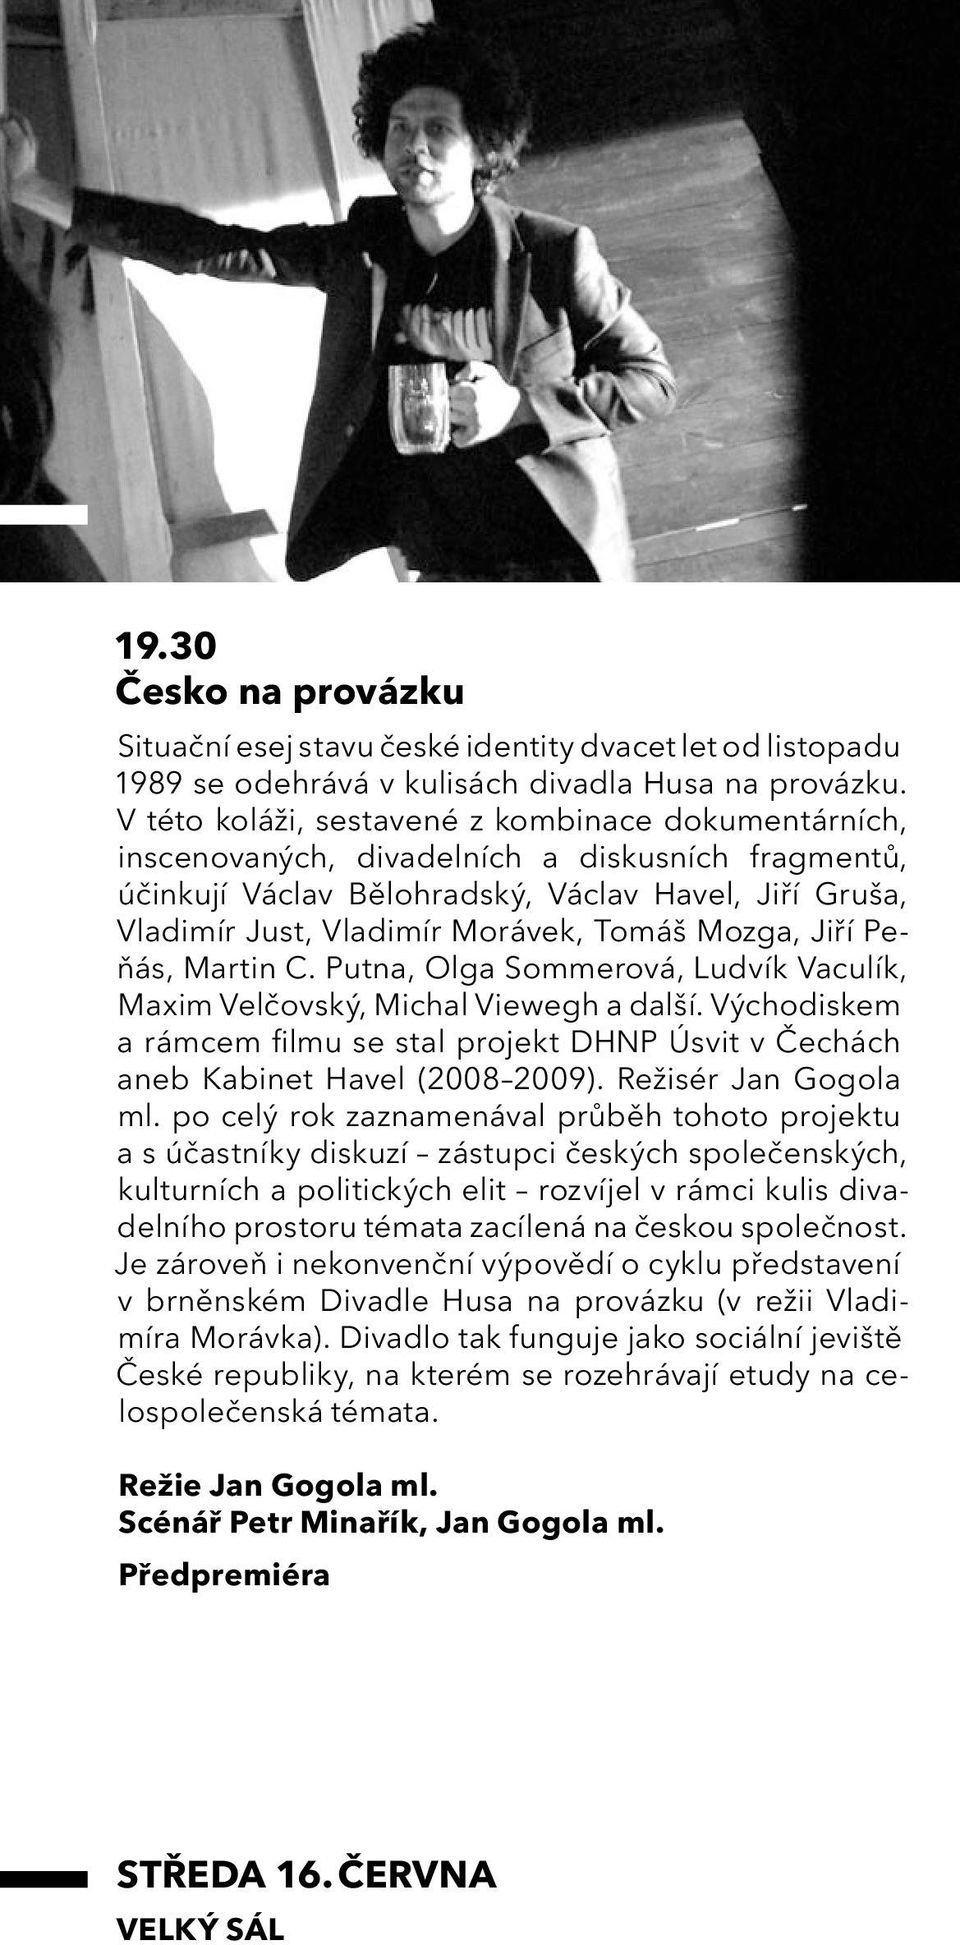 Mozga, Jiří Peňás, Martin C. Putna, Olga Sommerová, Ludvík Vaculík, Maxim Velčovský, Michal Viewegh a další.